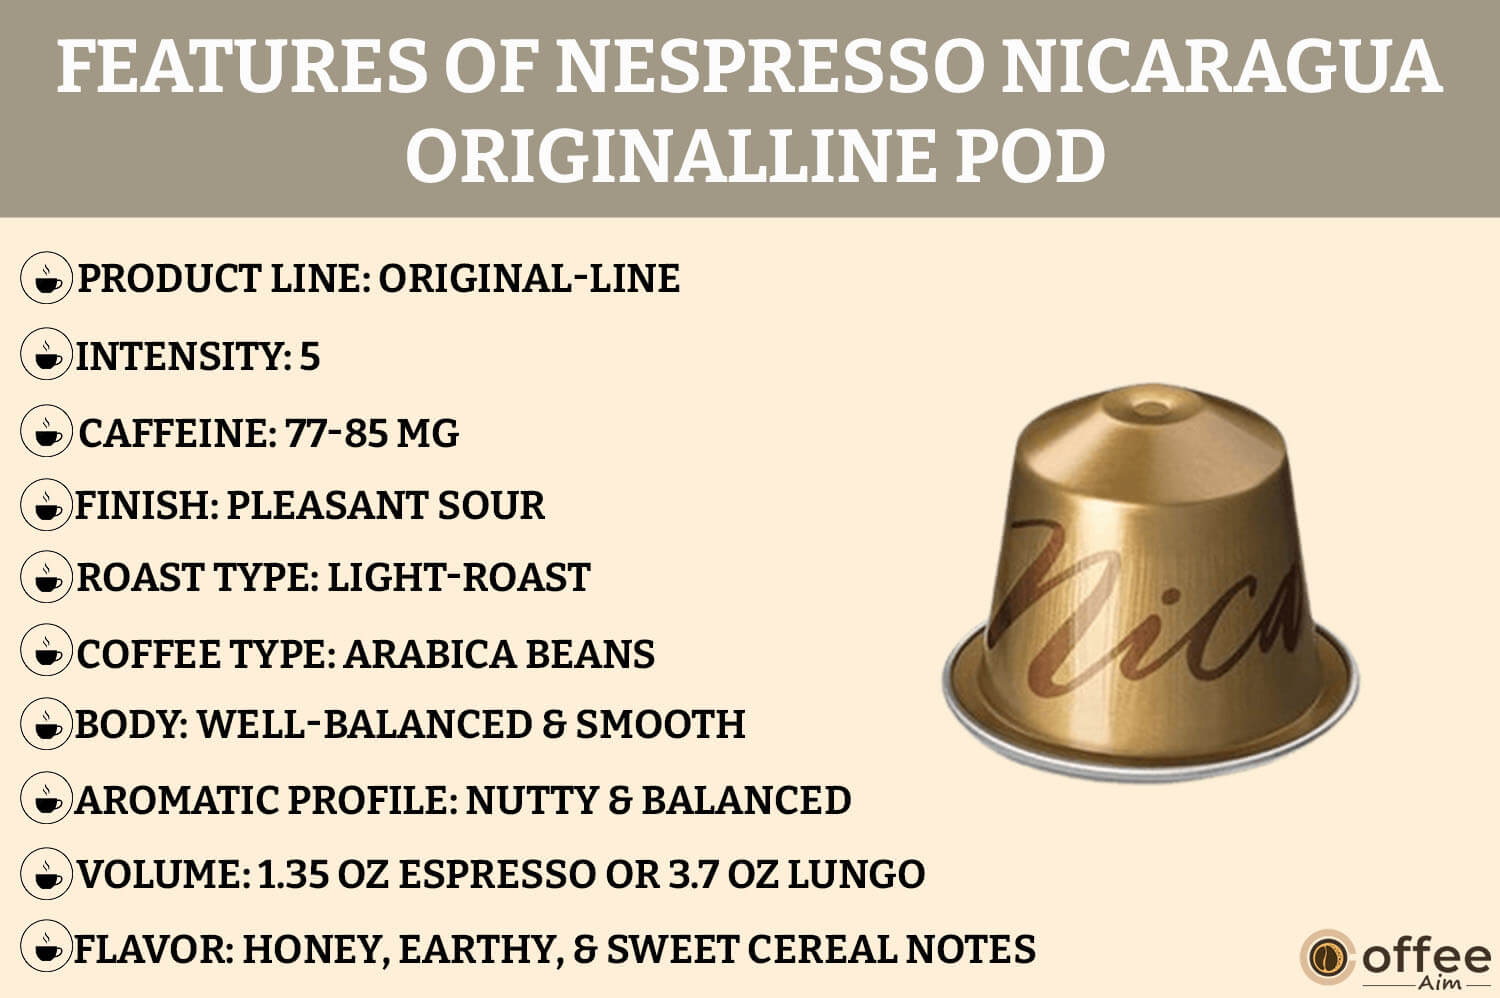 The image highlights features of the Nespresso Nicaragua OriginalLine Pod for our "Nespresso Nicaragua OriginalLine Pod Review" article.